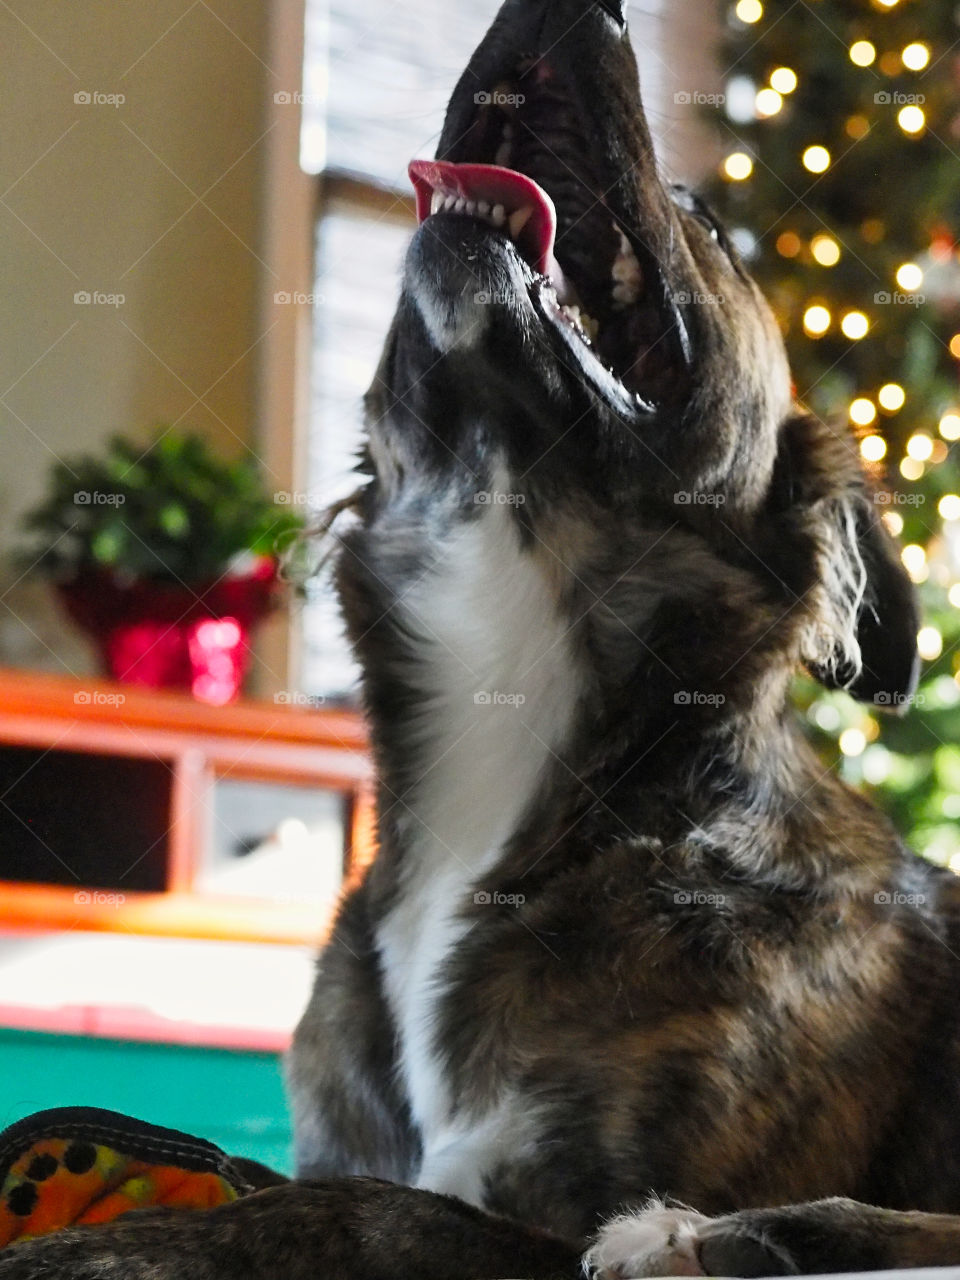 Goofy dog and Christmas tree